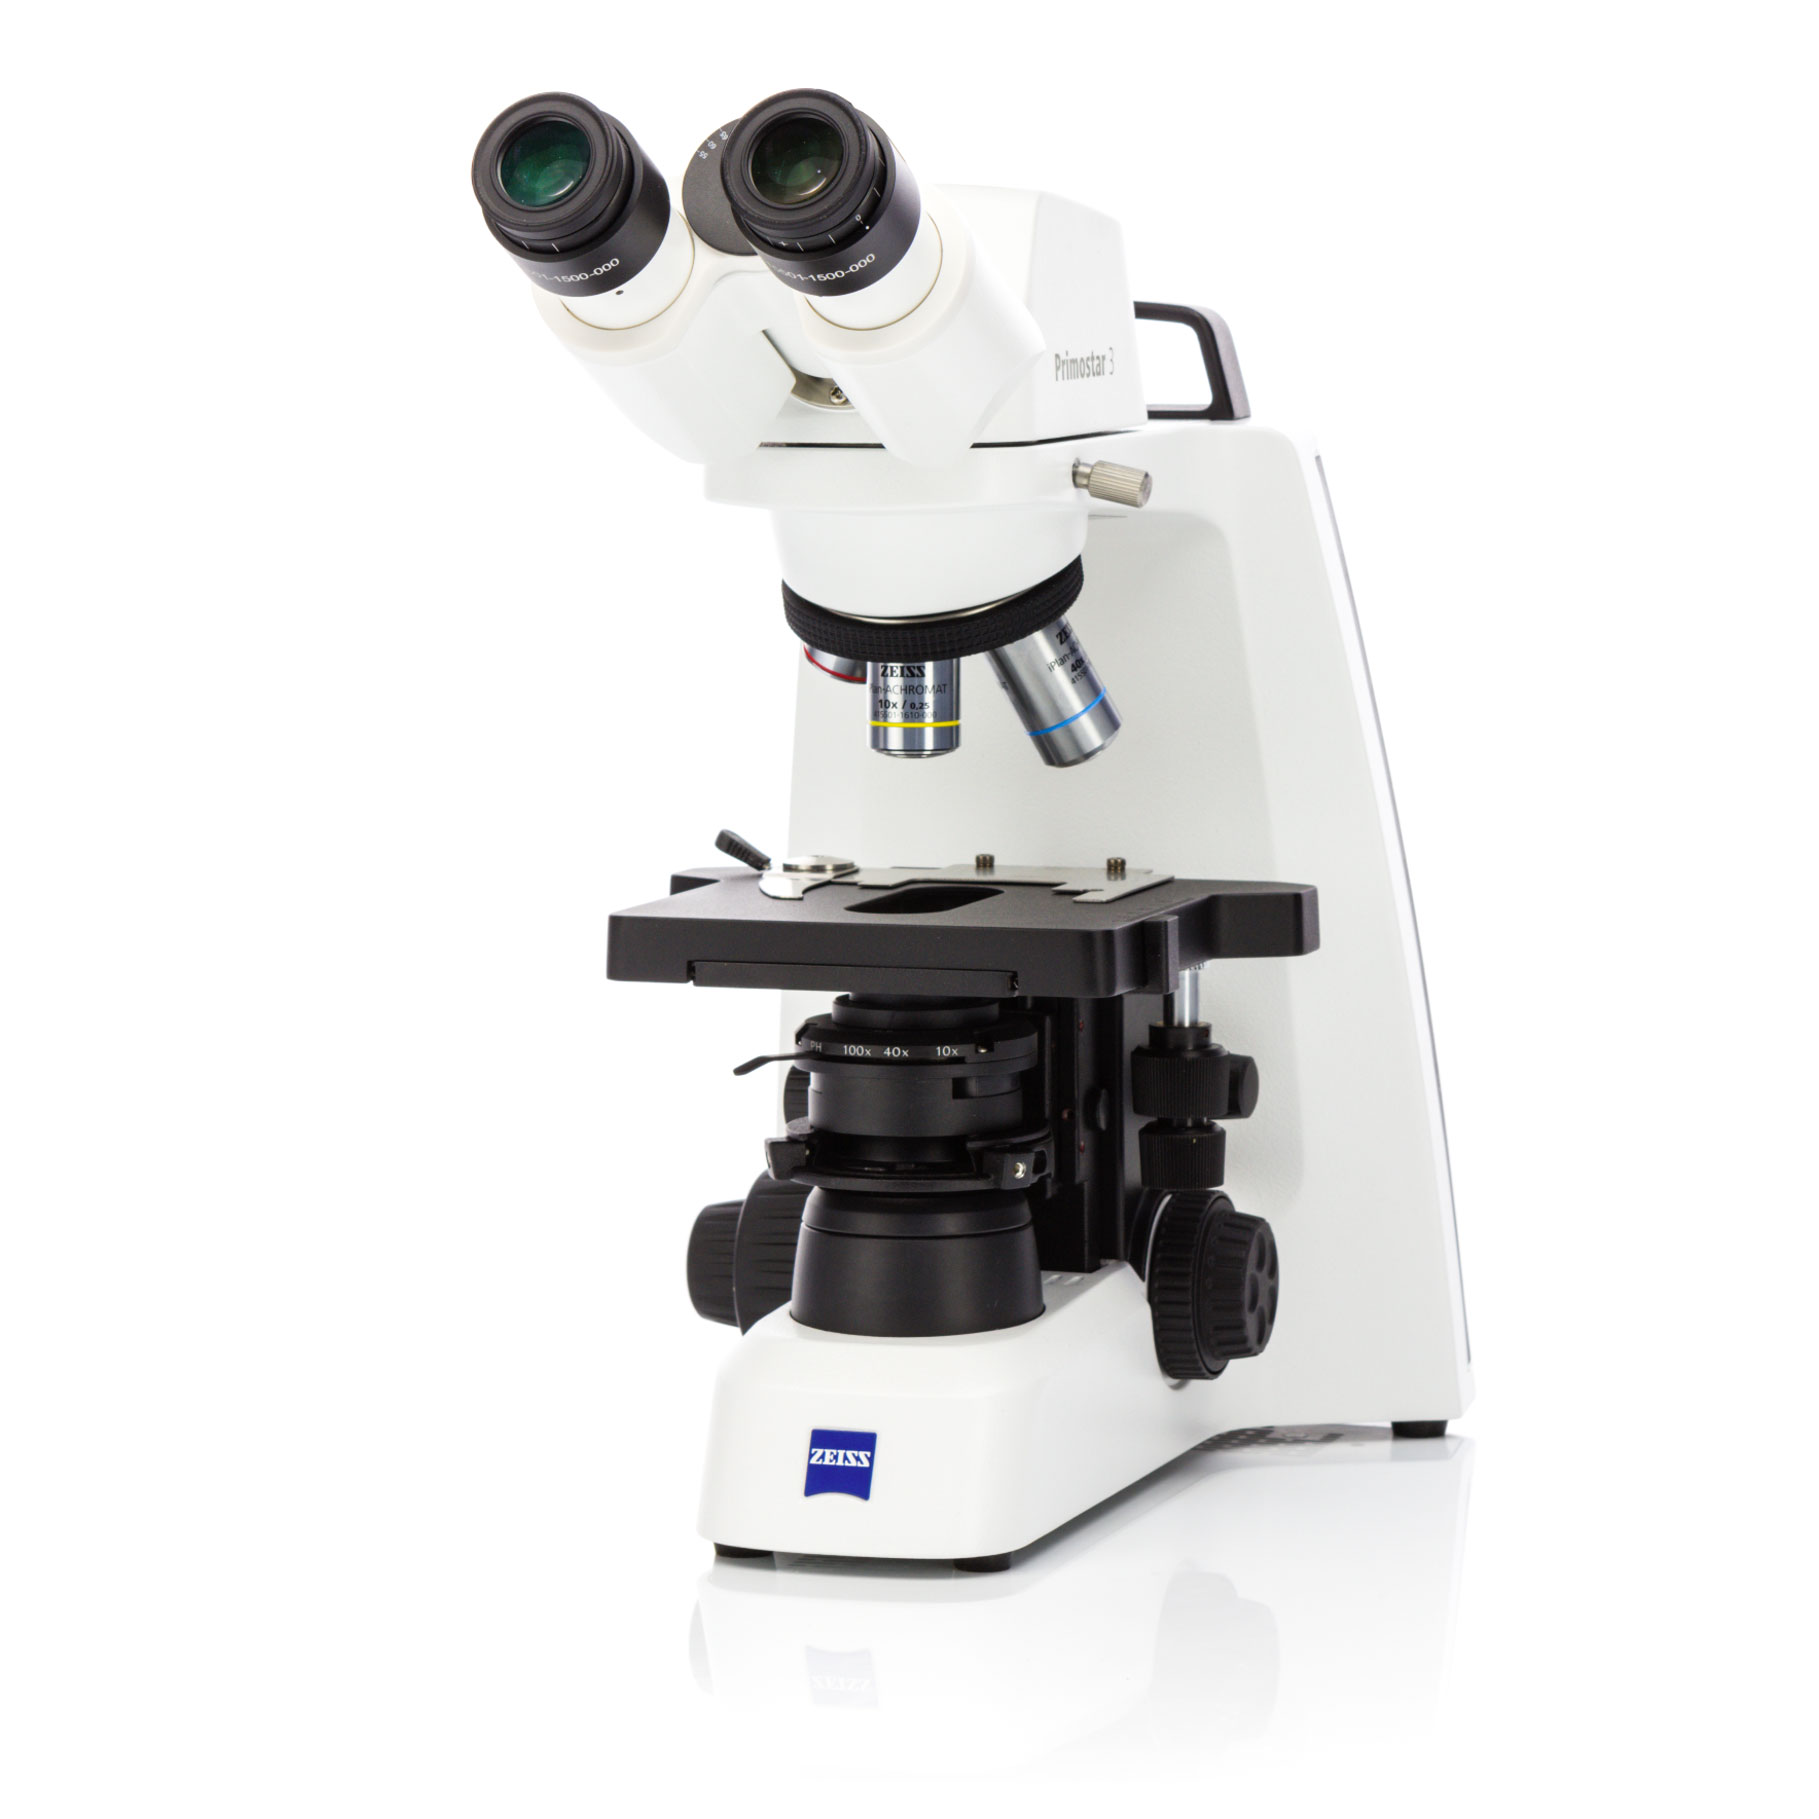 Ce microscope de routine, solide et compact, vous aide à faire évoluer vos méthodes d'enseignement et de formation ou vos protocoles courants en laboratoire hospitalier.